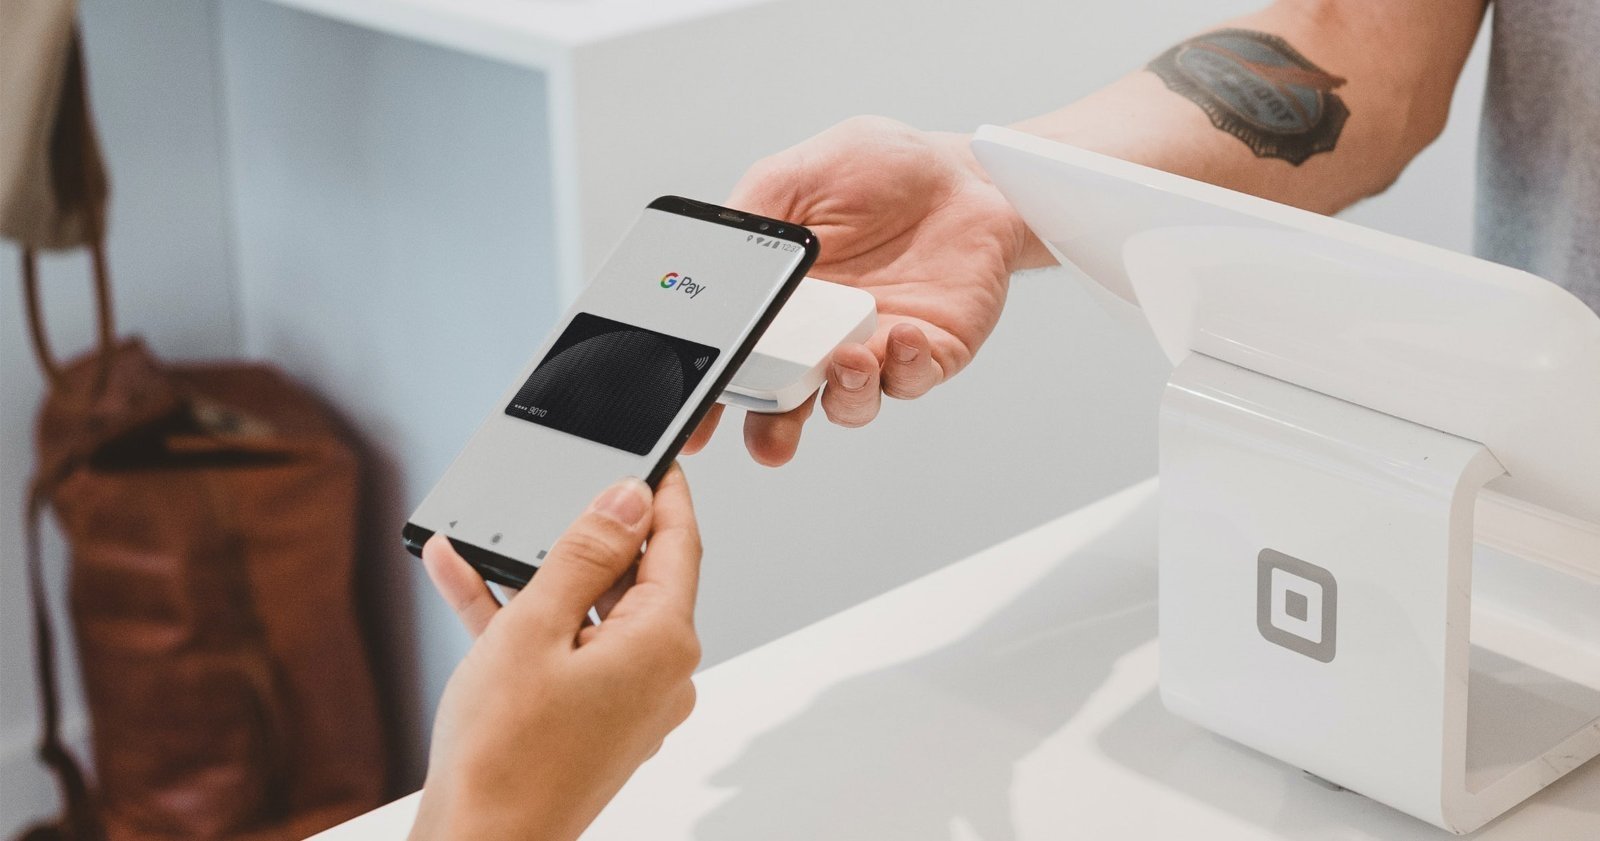 Pagos móviles con Google Pay